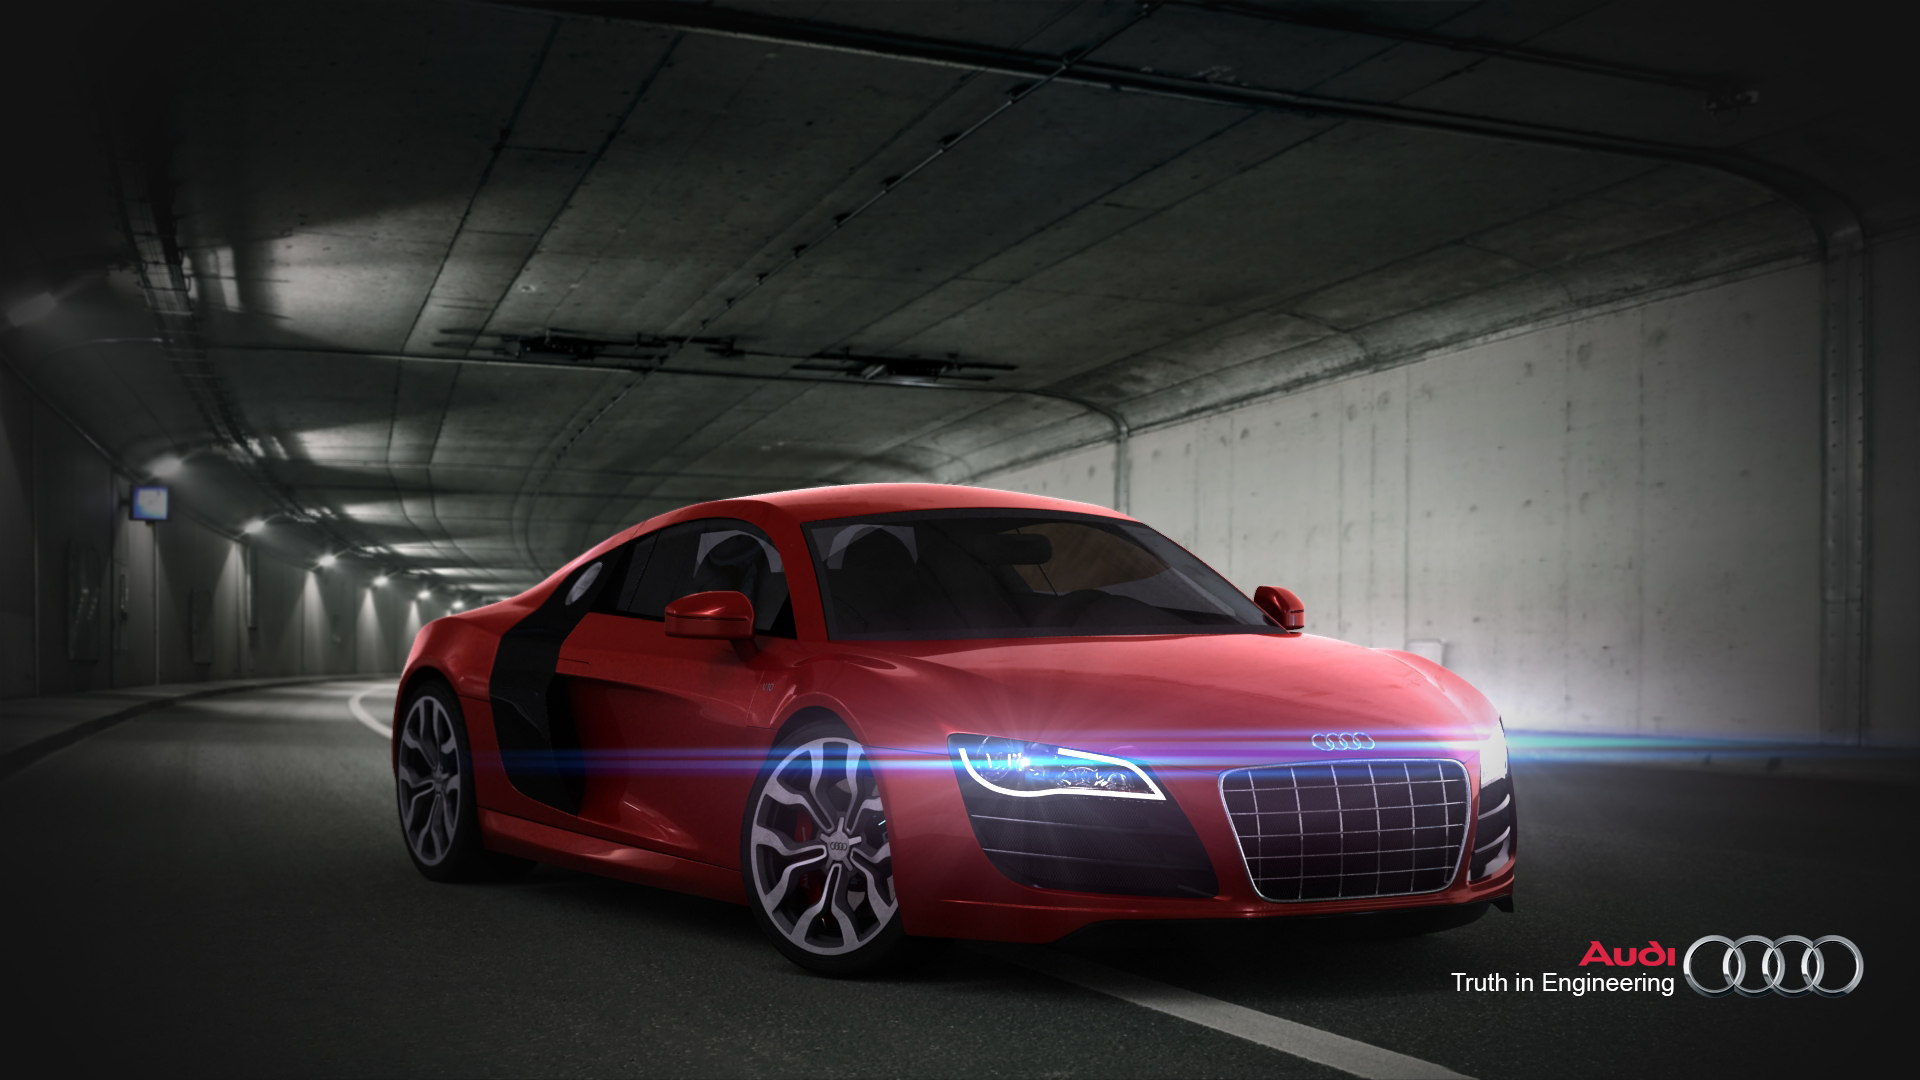 ArtStation - Audi R8 V10 Promotional Image